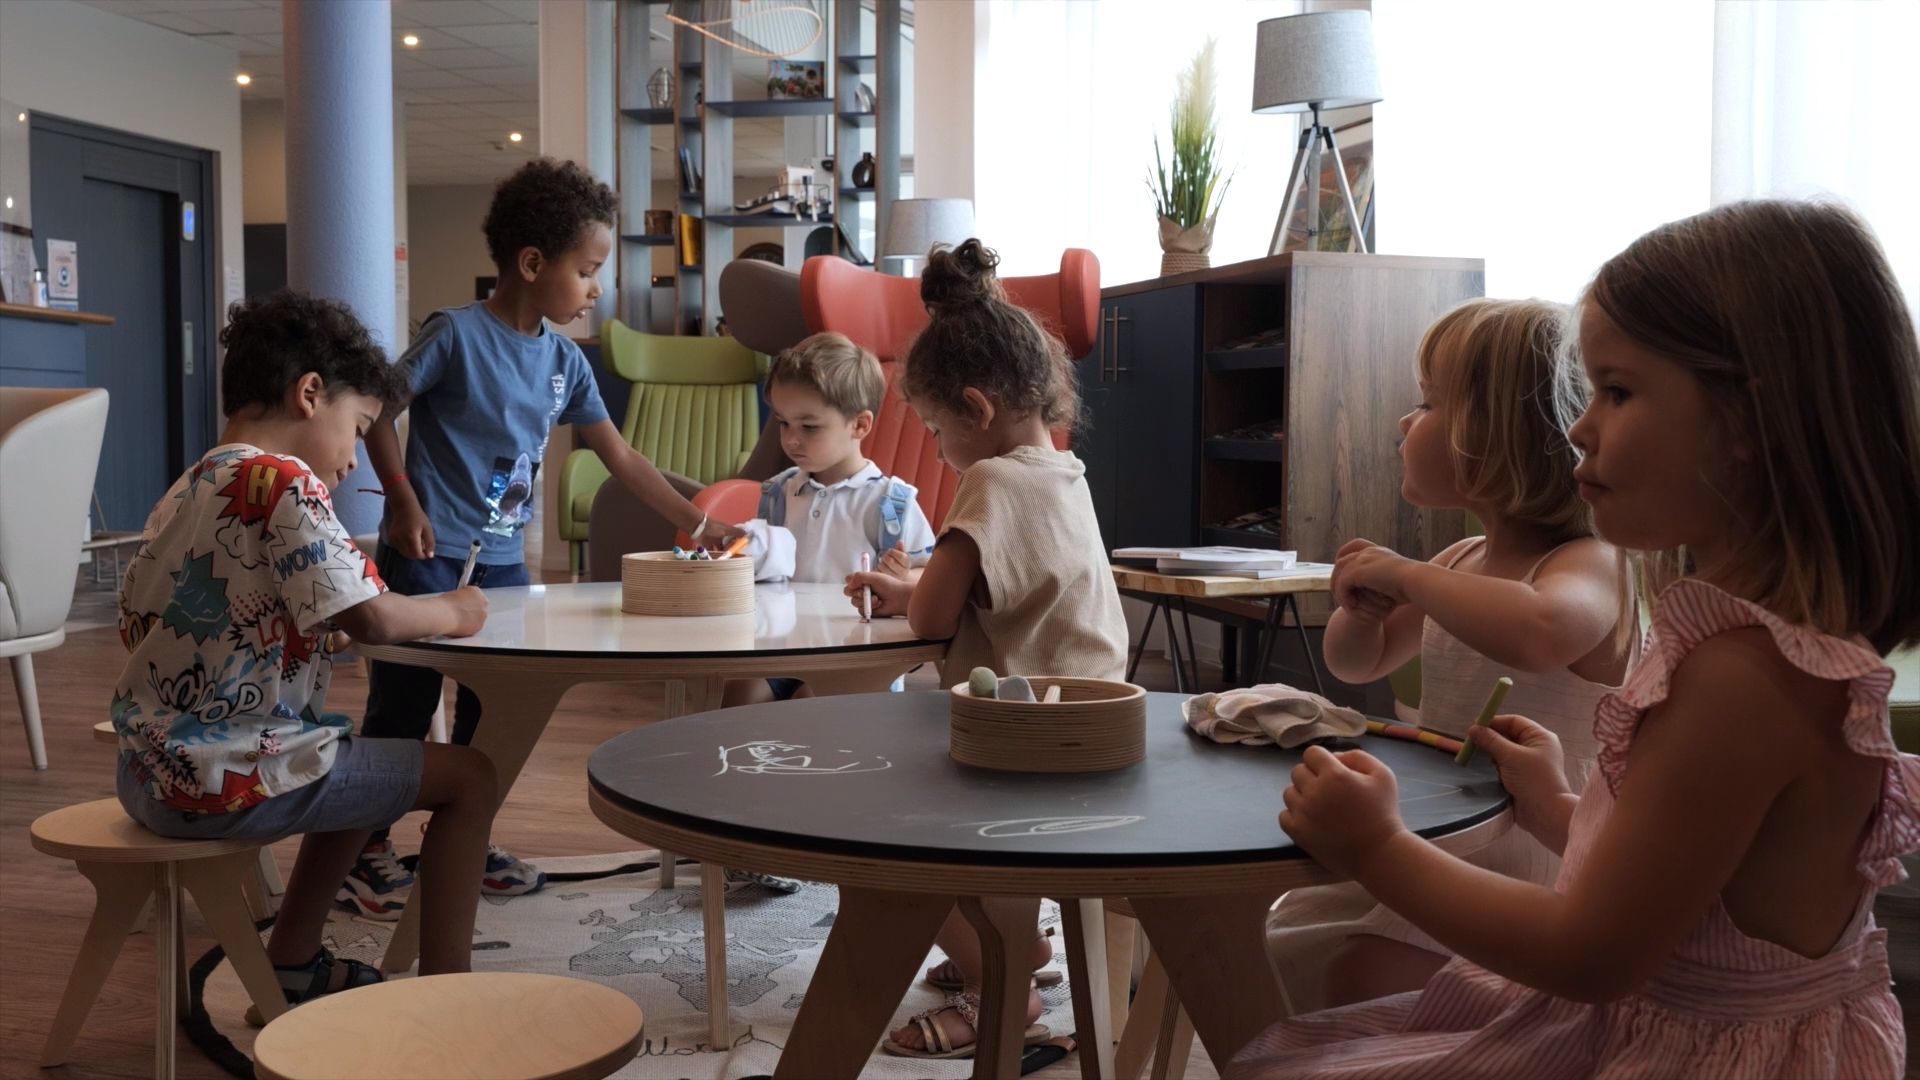 Enfants utilisant la Drawin'table ensemble dans un espace kids. Présente au salon Maison & Objet